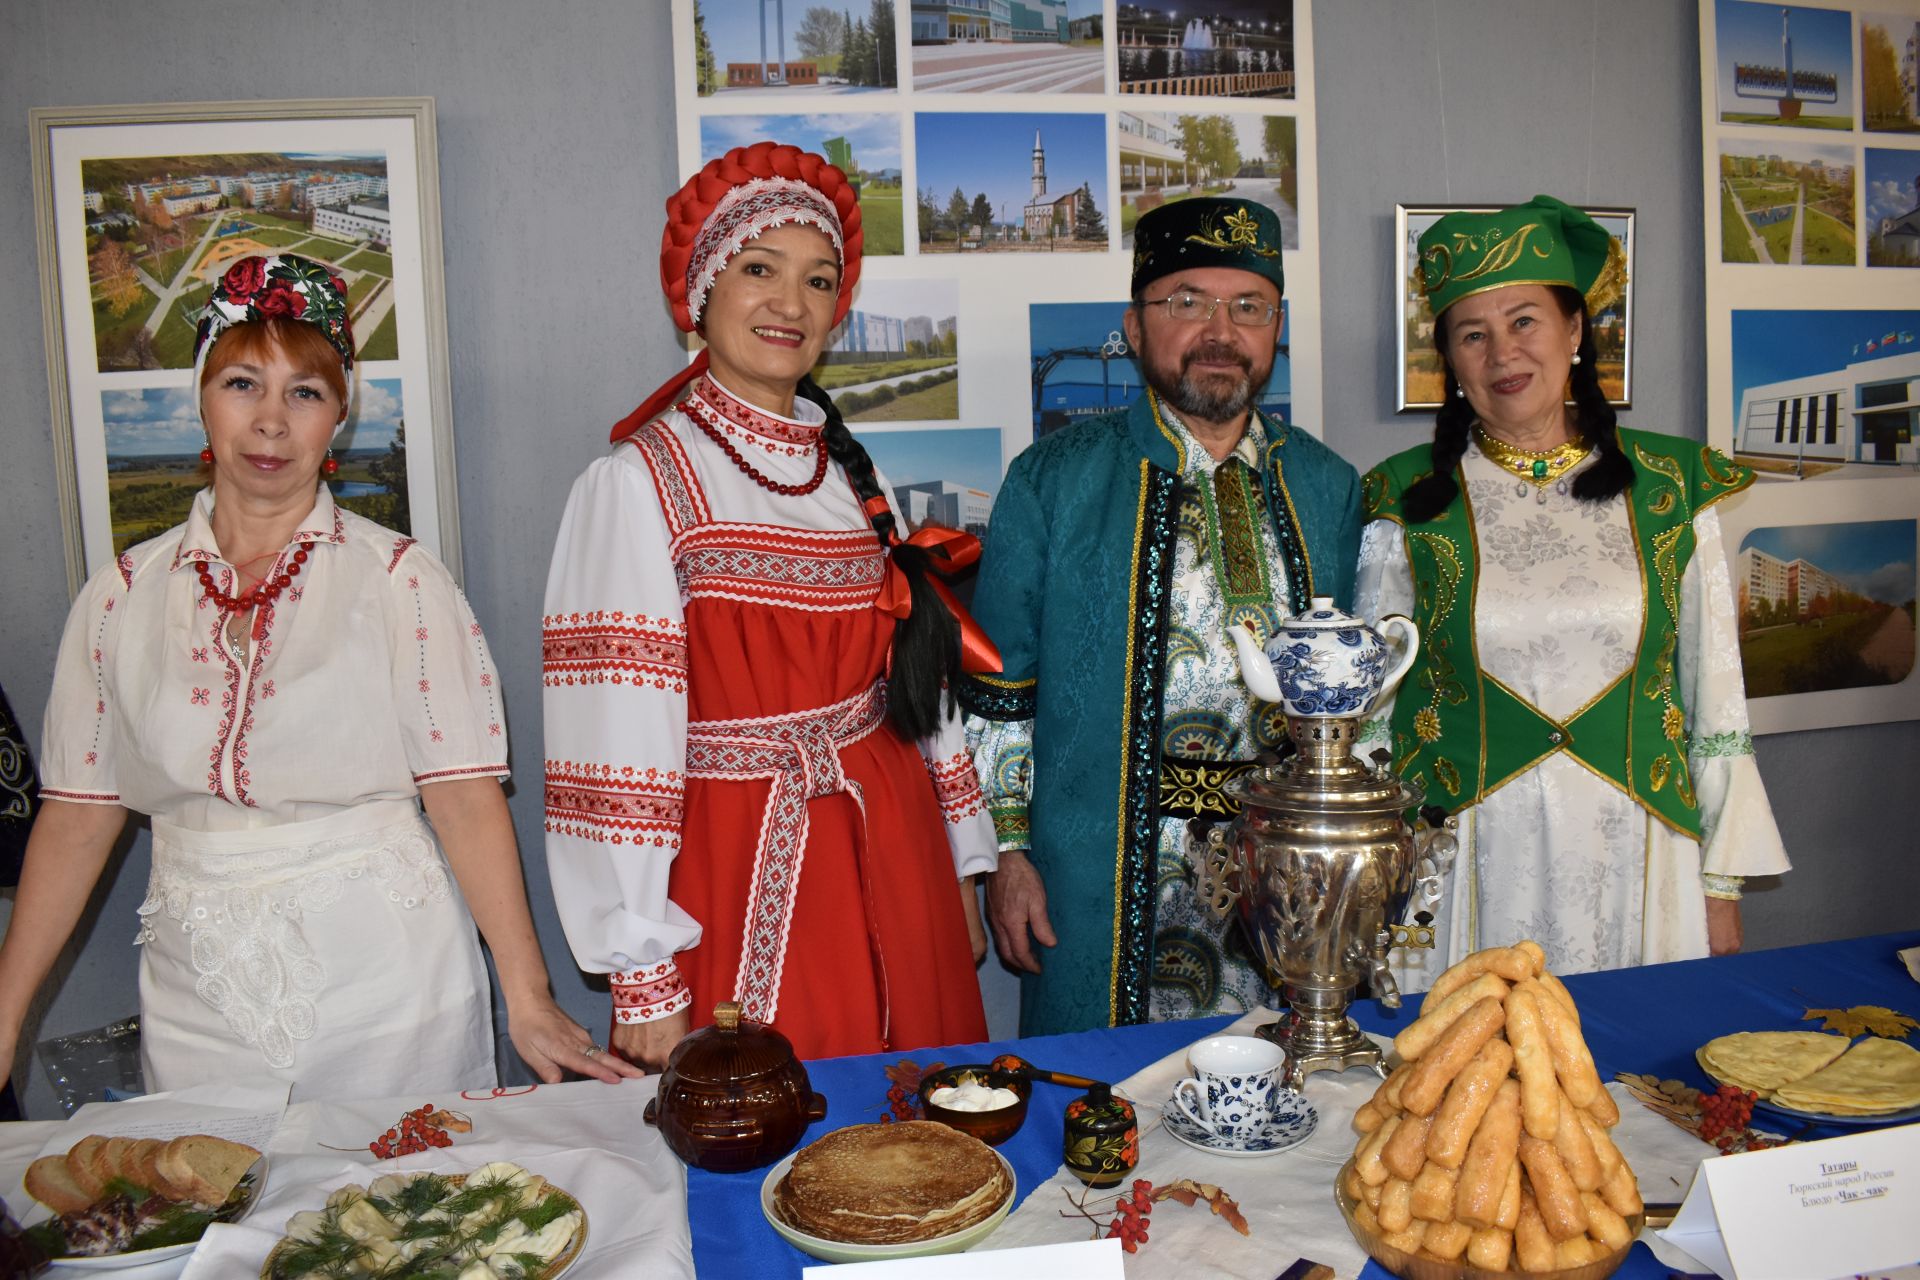 Фестиваль национальных культур в Камских Полянах